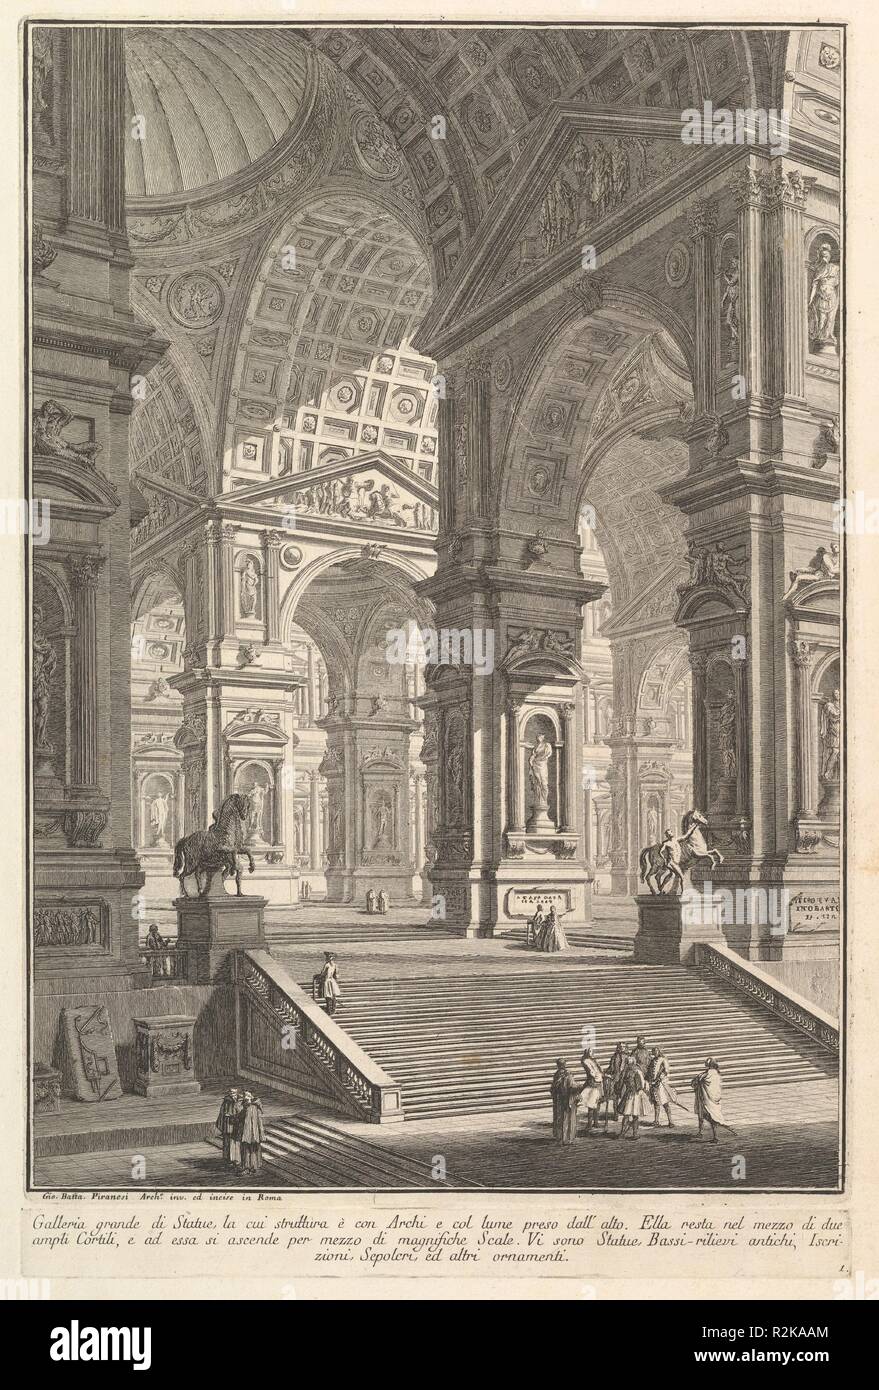 Large sculpture gallery built on arches and lit from above . . . (Galleria grande di Statue, la cui struttura è con Archi e col lume preso dall'alto . . . .). Artist: Giovanni Battista Piranesi (Italian, Mogliano Veneto 1720-1778 Rome). Dimensions: Plate (Image): 14 1/16 × 9 13/16 in. (35.7 × 24.9 cm)  Plate (Inscription): 13/16 × 9 3/4 in. (2 × 24.8 cm)  Sheet: 19 7/16 × 13 3/16 in. (49.4 × 33.5 cm). Series/Portfolio: Prima Parte di Architettura, e Prospettive (Part One of Architecture and Perspectives). Date: ca. 1750. Museum: Metropolitan Museum of Art, New York, USA. Stock Photo